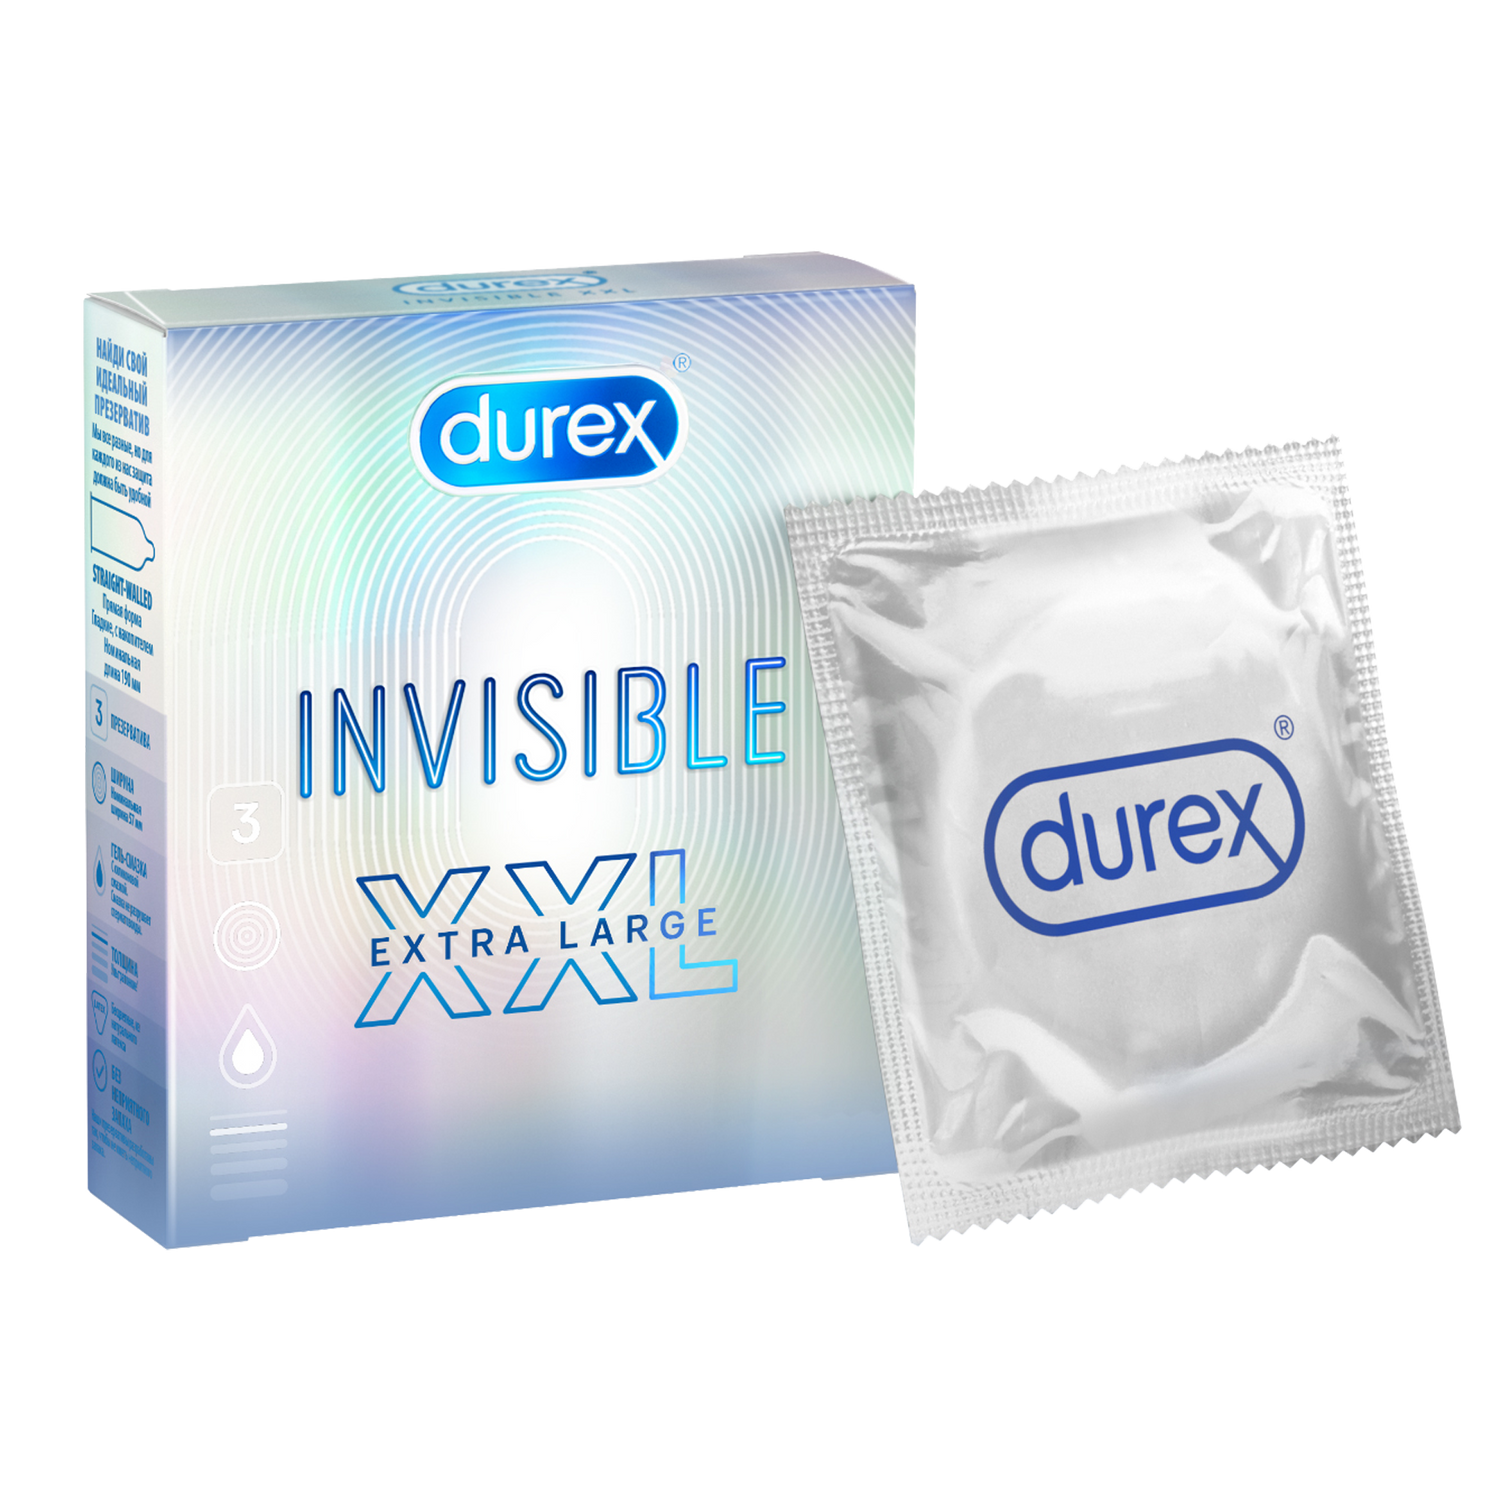 Durex Invisible XXL, презервативы, 3 шт. durex презервативы из натурального латекса invisible 3